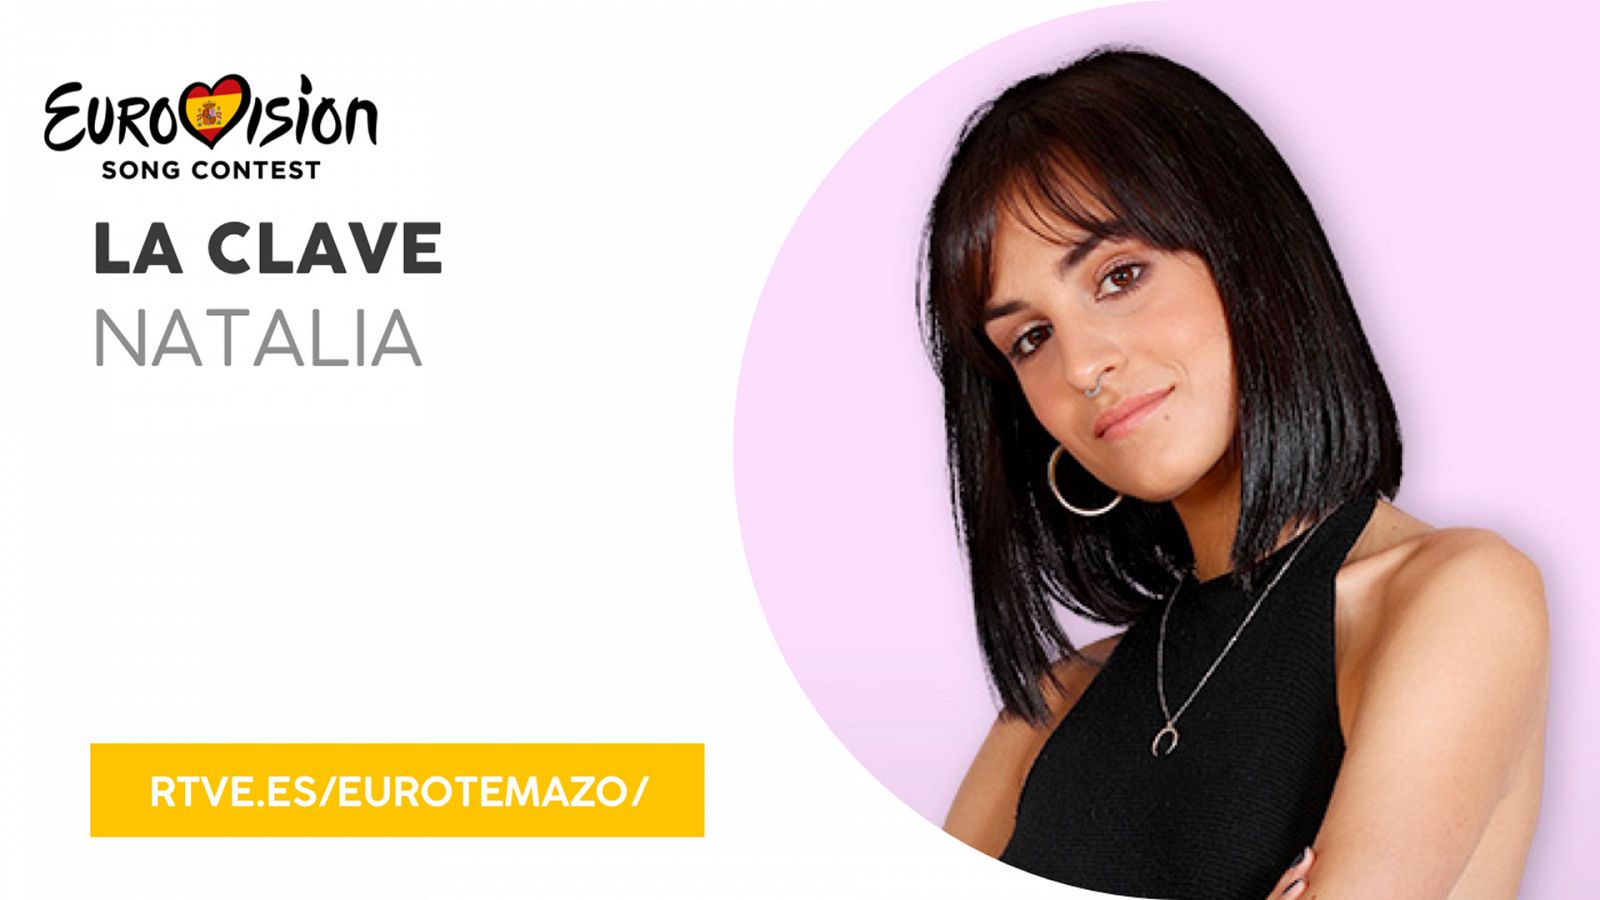 Eurovisión 2019 - Eurotemazo: versión final de "La clave", cantada por Natalia